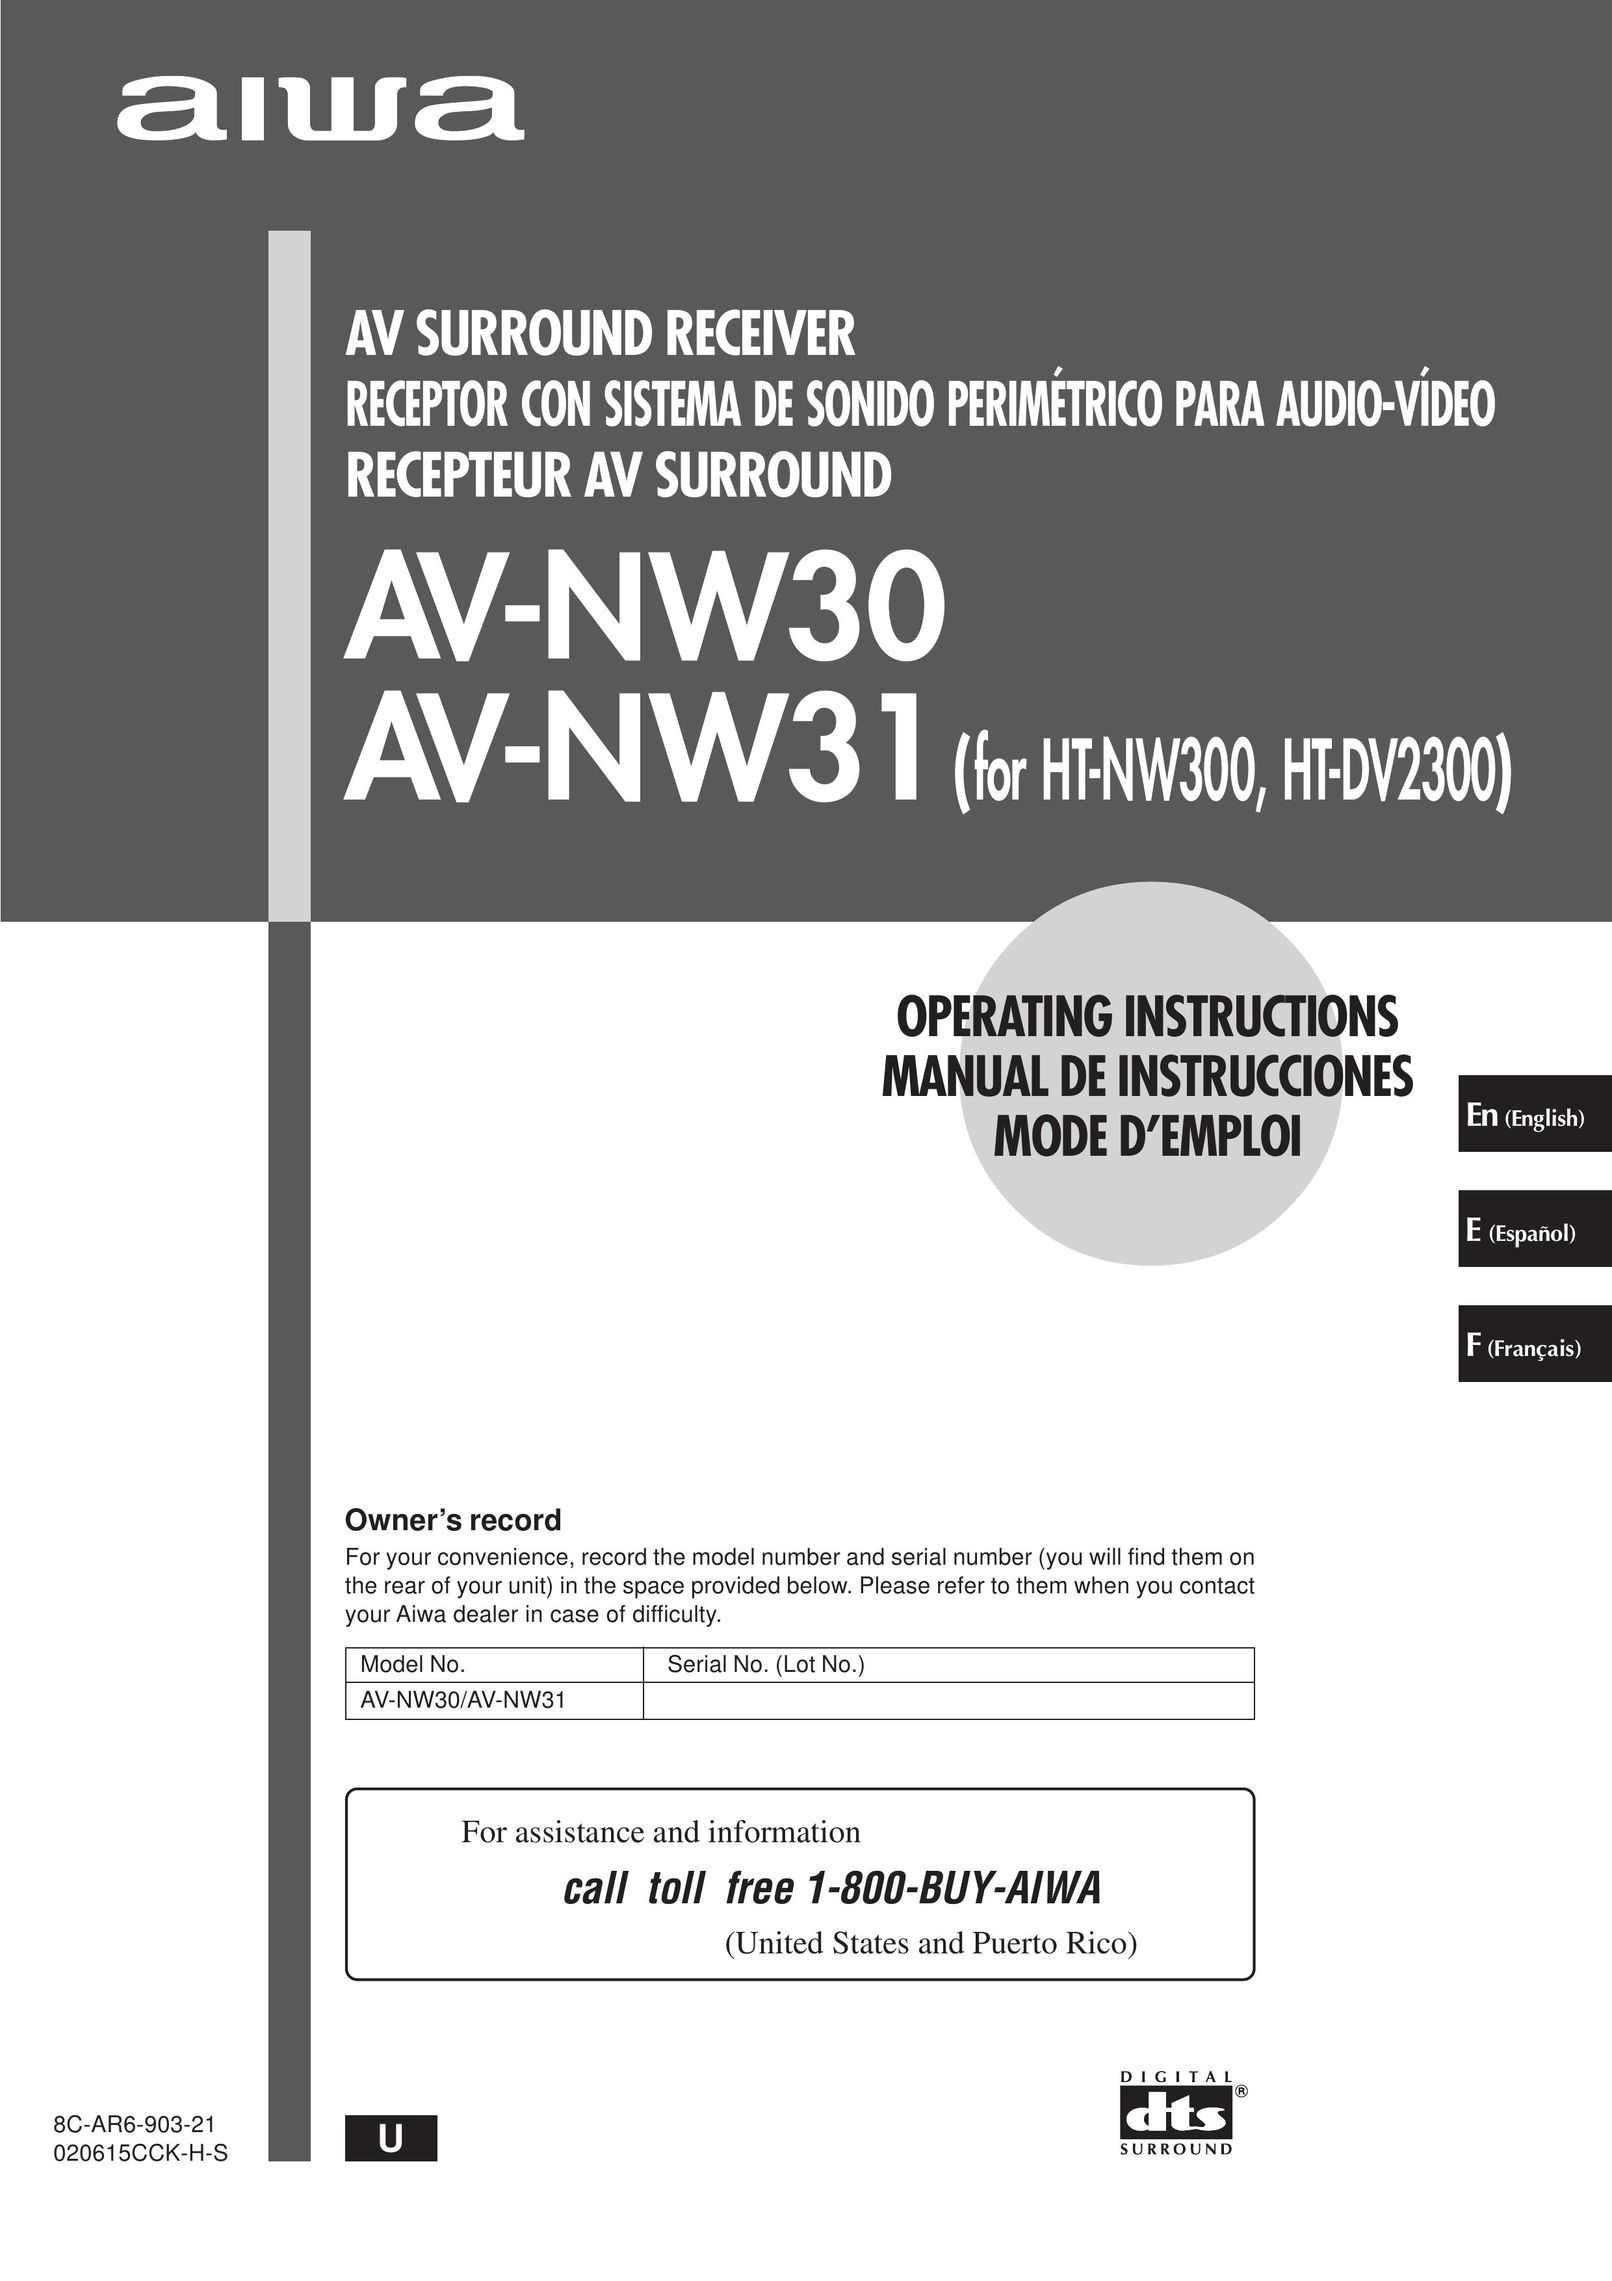 Aiwa AV-NW30, AV-NW31 Stereo Receiver User Manual